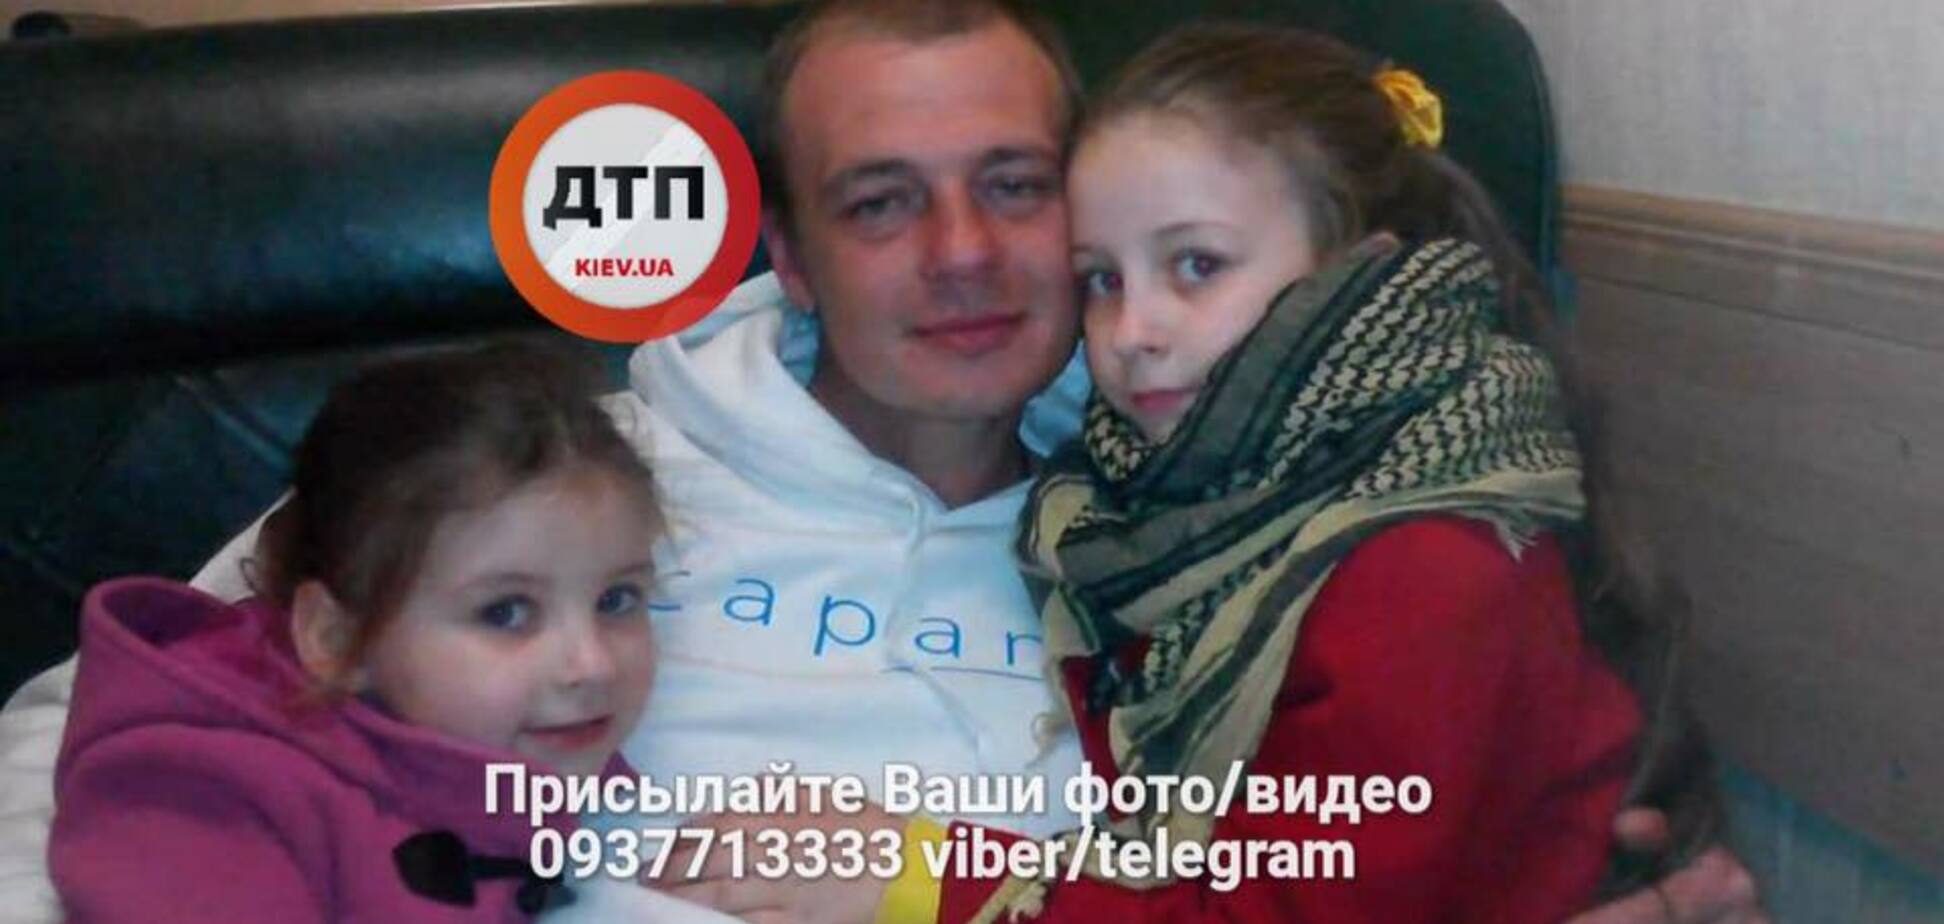 'Я люблю свою сім'ю': у Києві зник чоловік із незвичайними прикметами